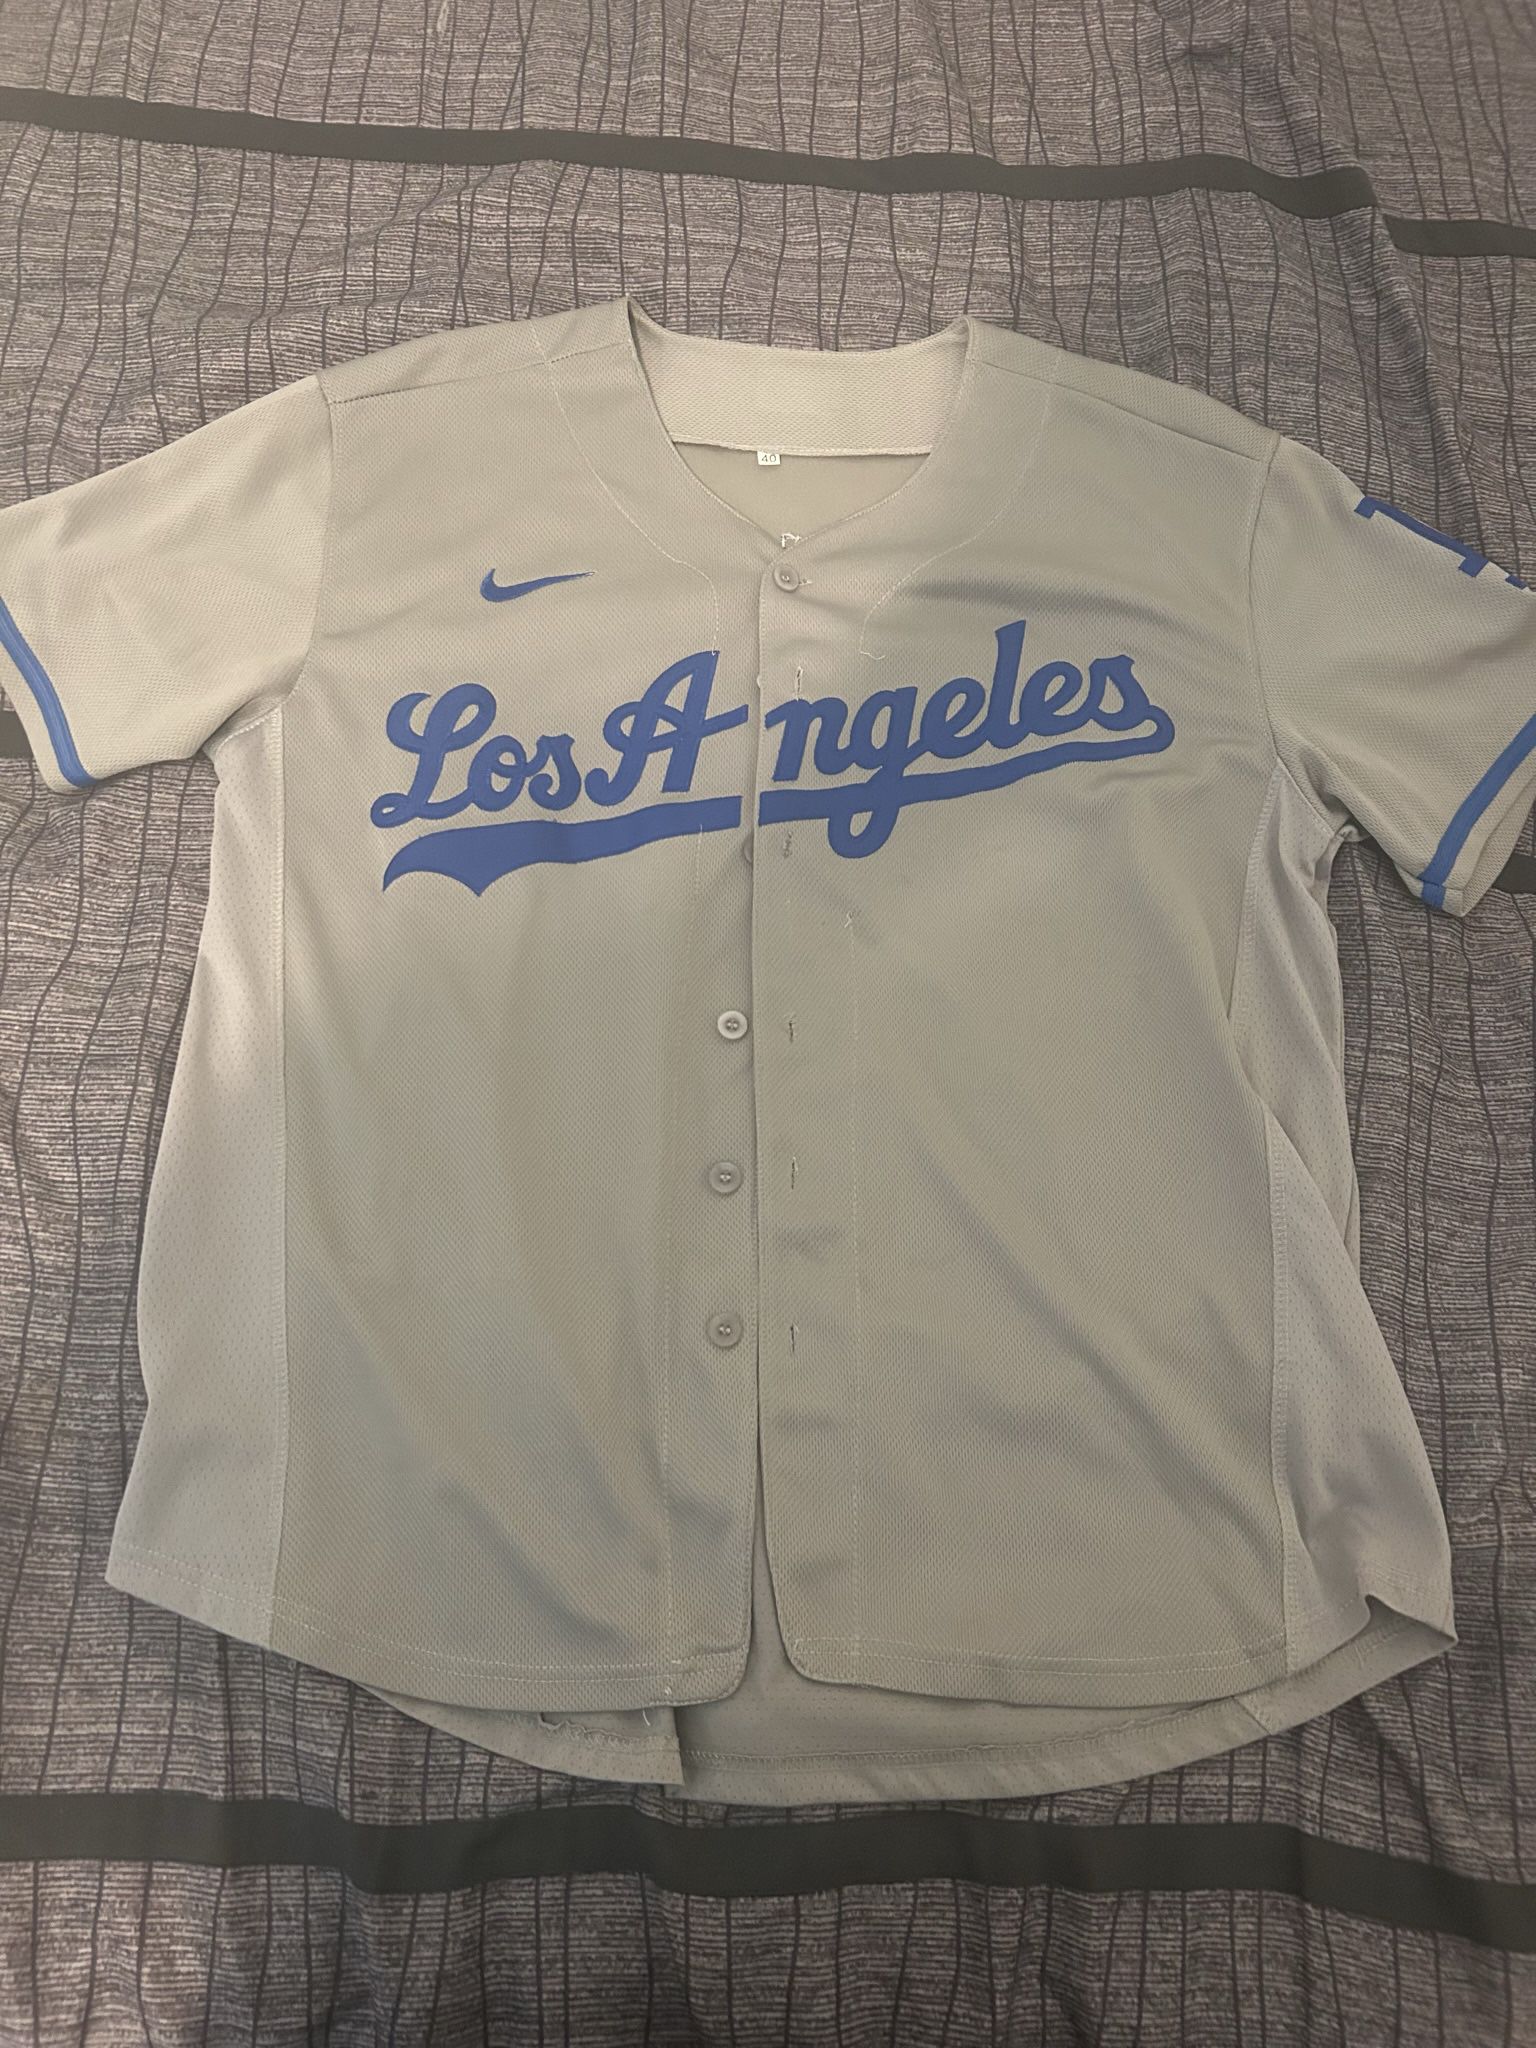 LA Dodgers Gray Urias Jersey Size 40/M